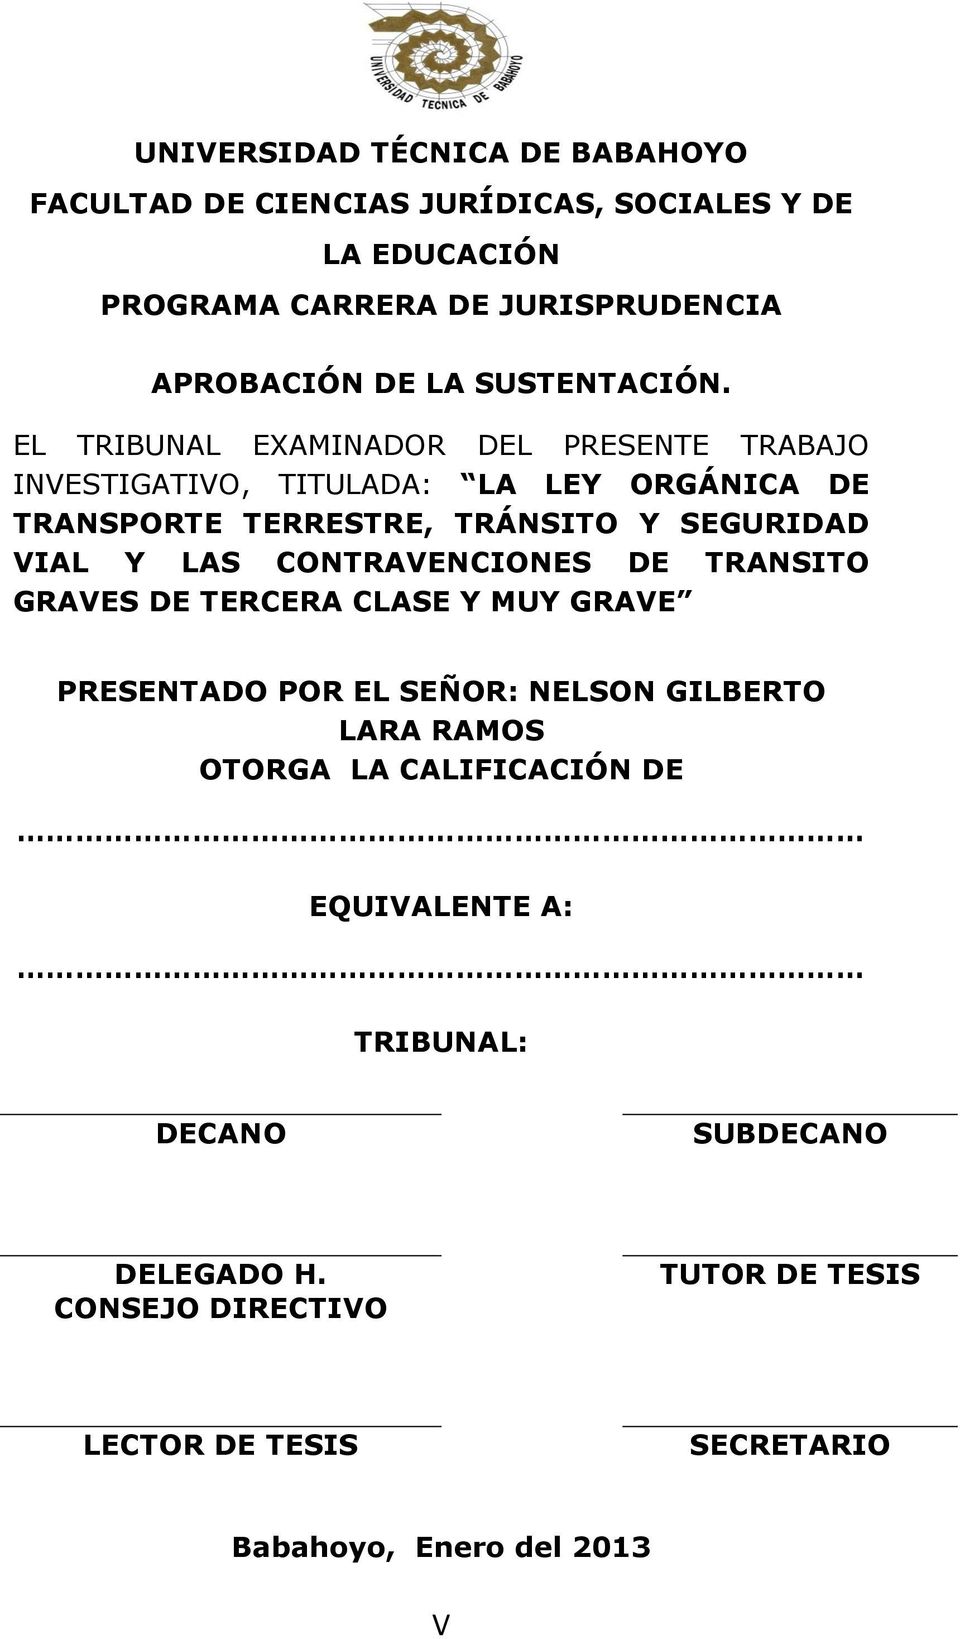 EL TRIBUNAL EXAMINADOR DEL PRESENTE TRABAJO INVESTIGATIVO, TITULADA: LA LEY ORGÁNICA DE TRANSPORTE TERRESTRE, TRÁNSITO Y SEGURIDAD VIAL Y LAS